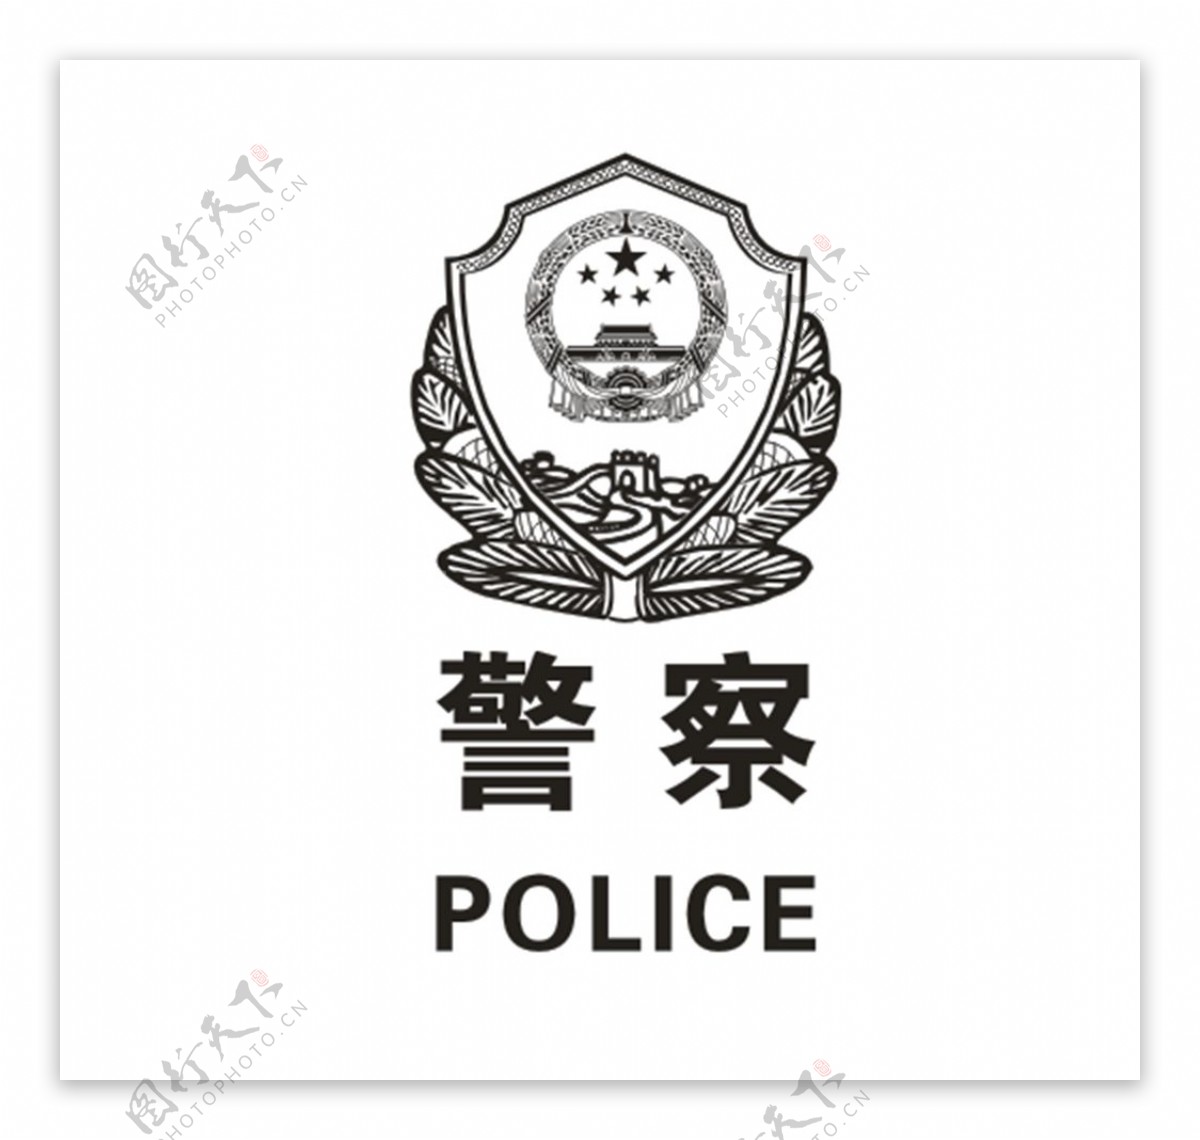 警察加警徽加POLICE